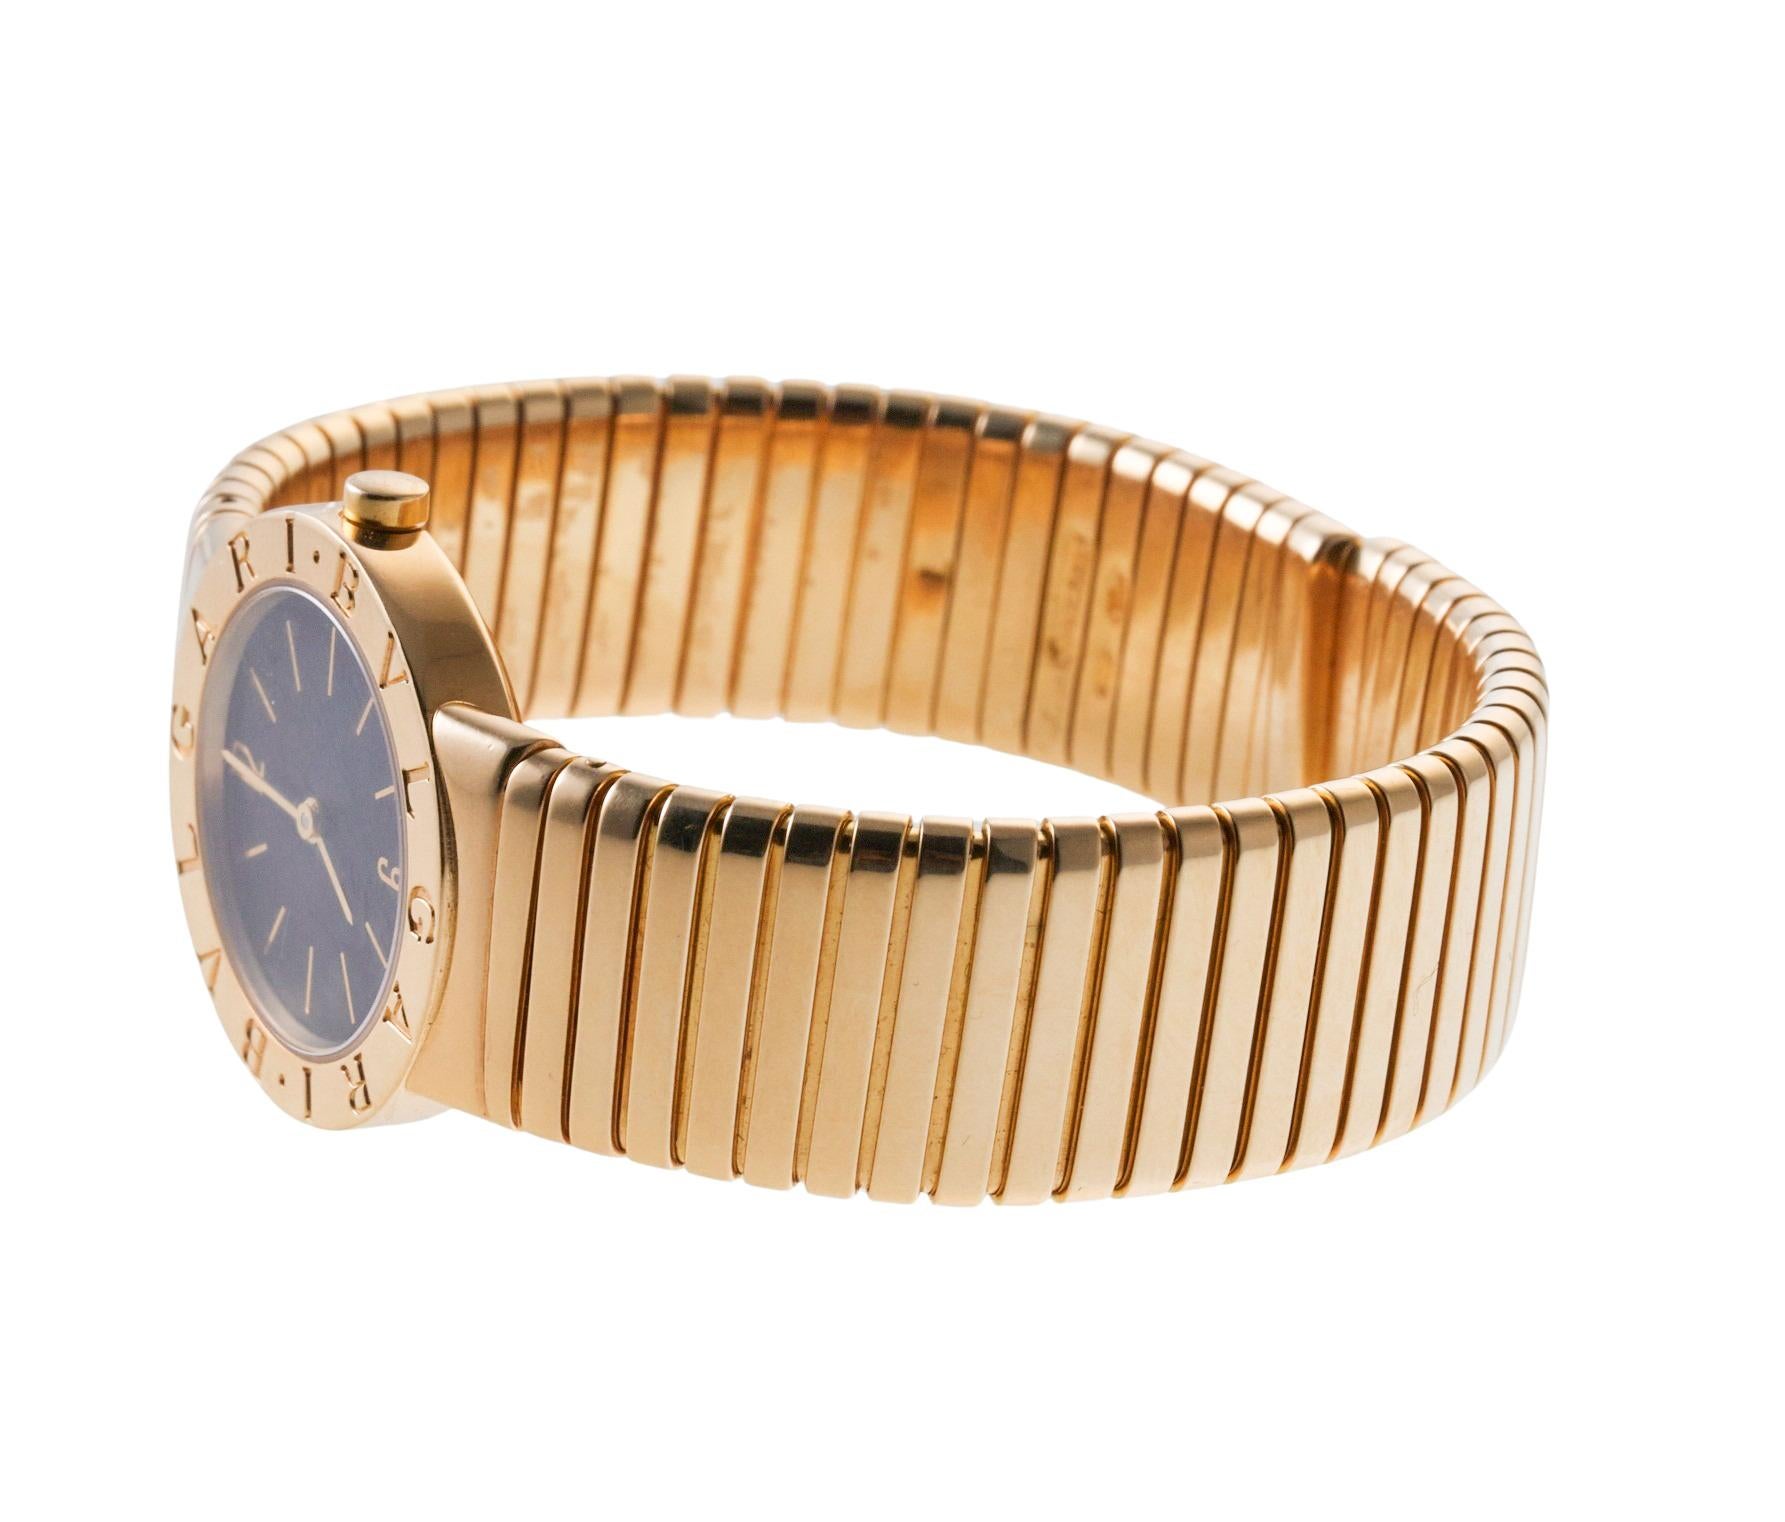 Bracelet de montre Bvlgari Tubogas en or 18 carats, au design légèrement flexible. Le bracelet s'adapte à un poignet d'environ 7